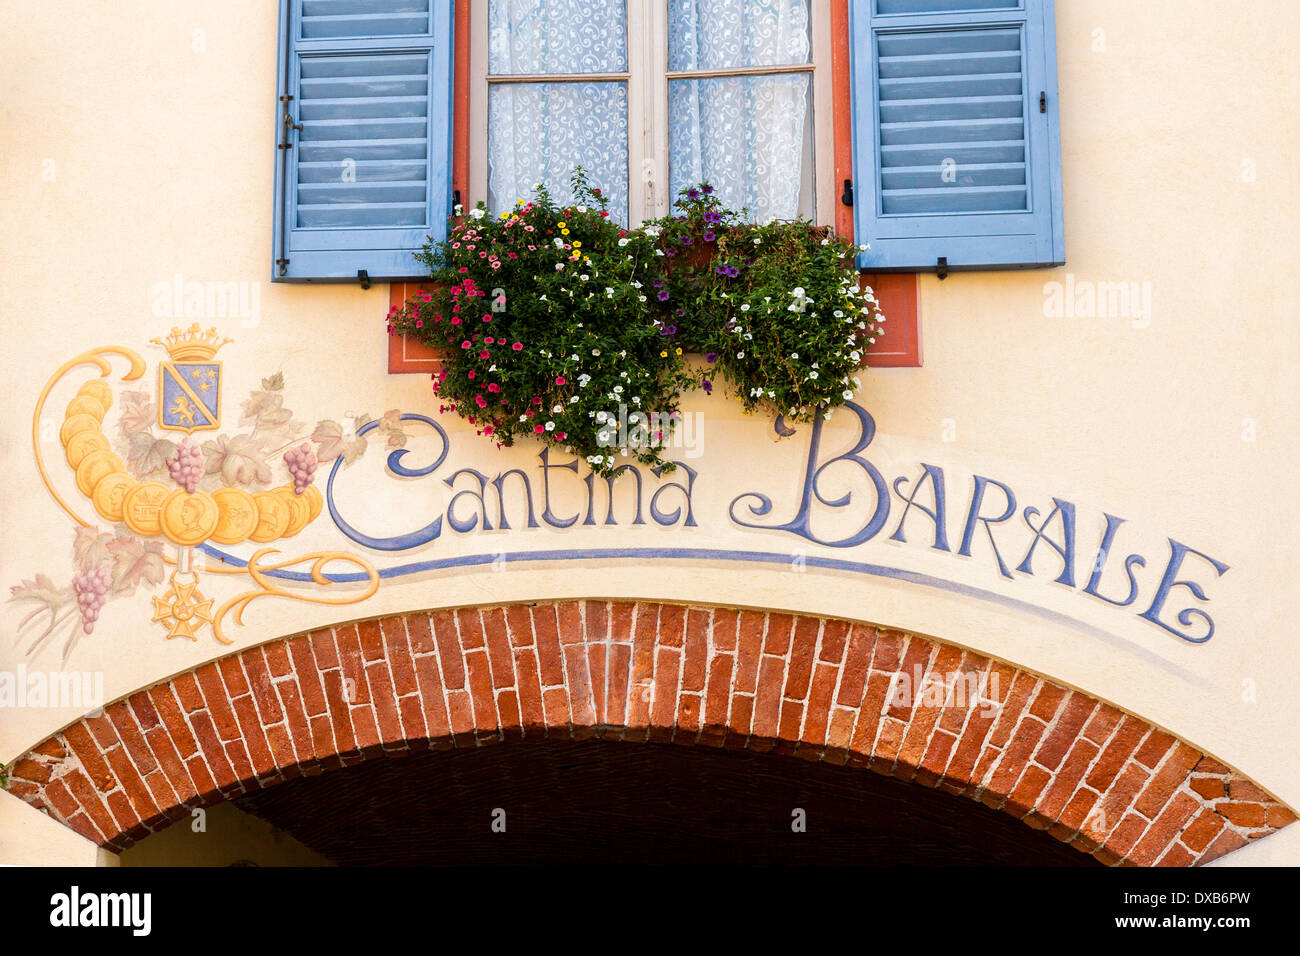 Decorative sign pour un vin cantina dans le district de vin italien Barolo, Langhe, Italie Banque D'Images